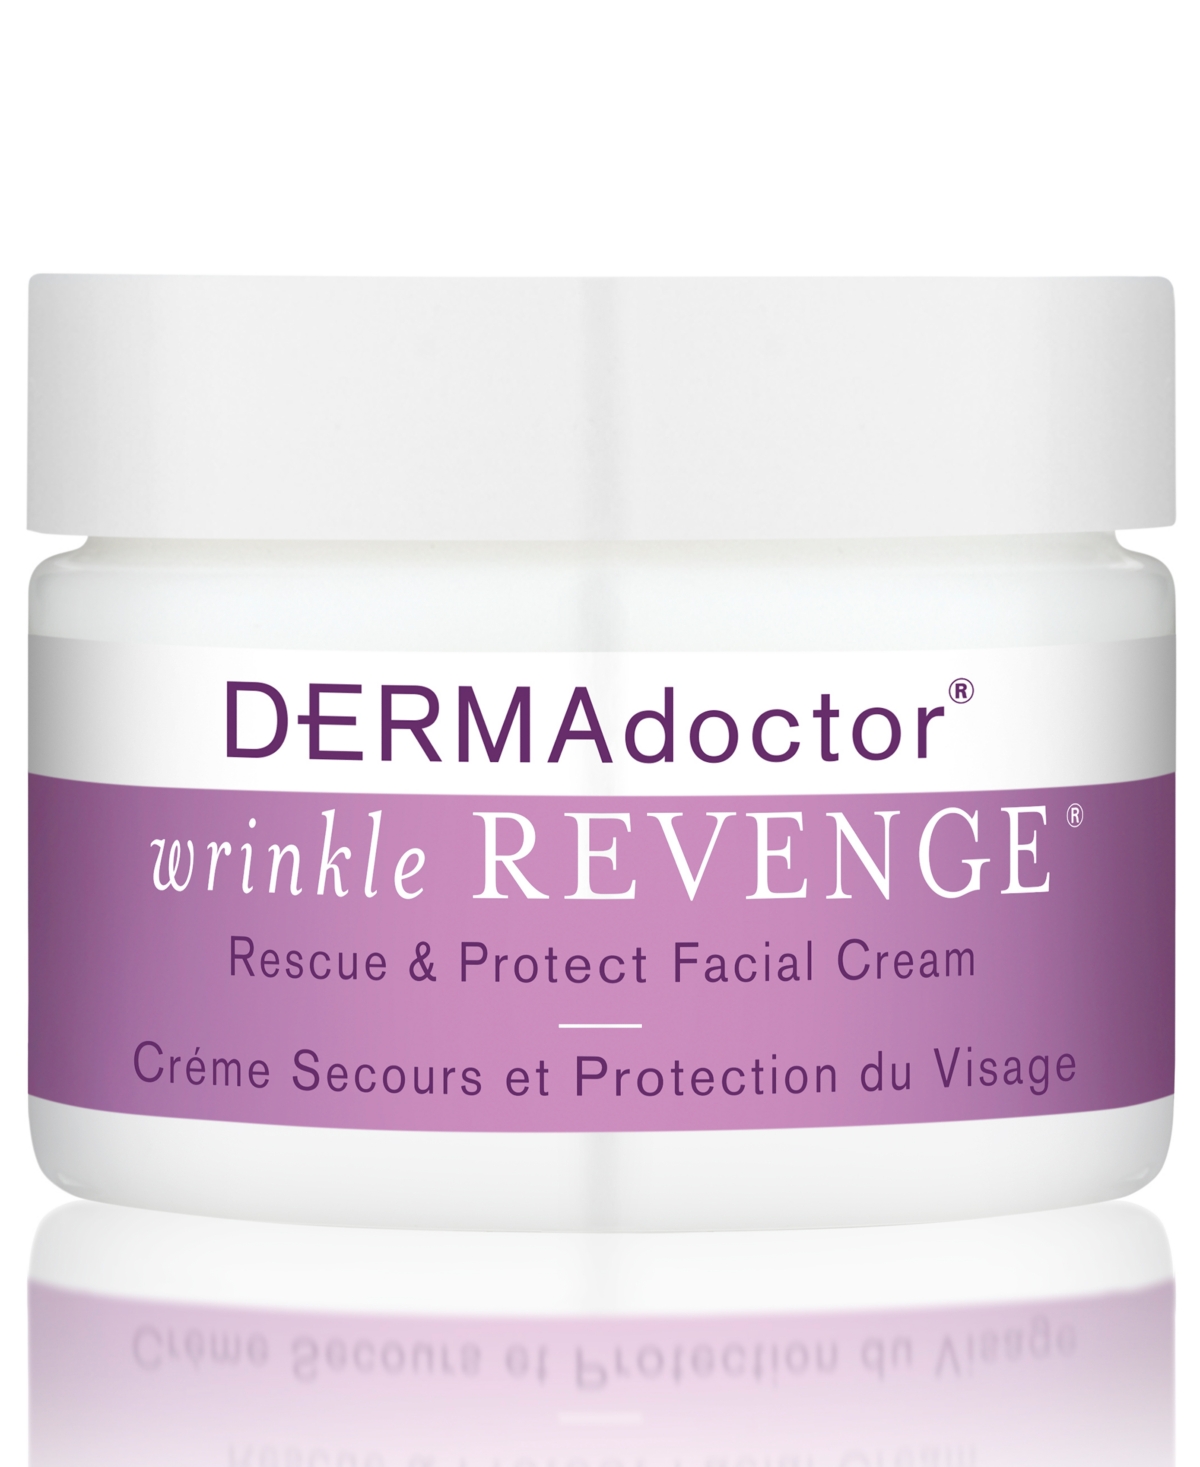 Wrinkle Revenge Rescue & Protect Facial Cream, 1.7-oz.